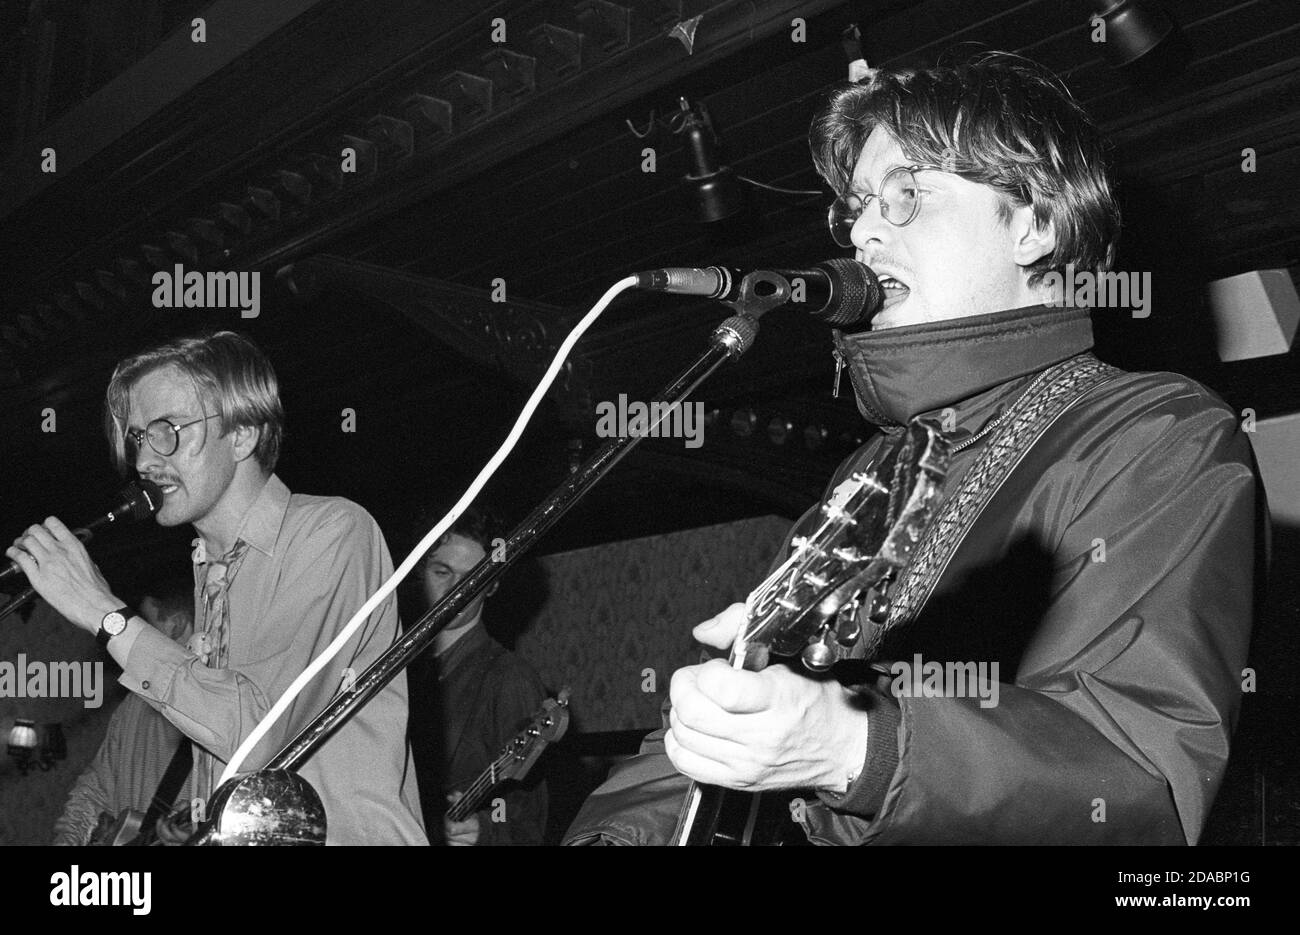 Monochrom-Bild von Duglas T. Stewart, Gerard Love und Norman Blake von Glasgow Indie-Band BMX Bandits, die 1990 in Esquires, Bedford, Großbritannien, auftrat. Stockfoto